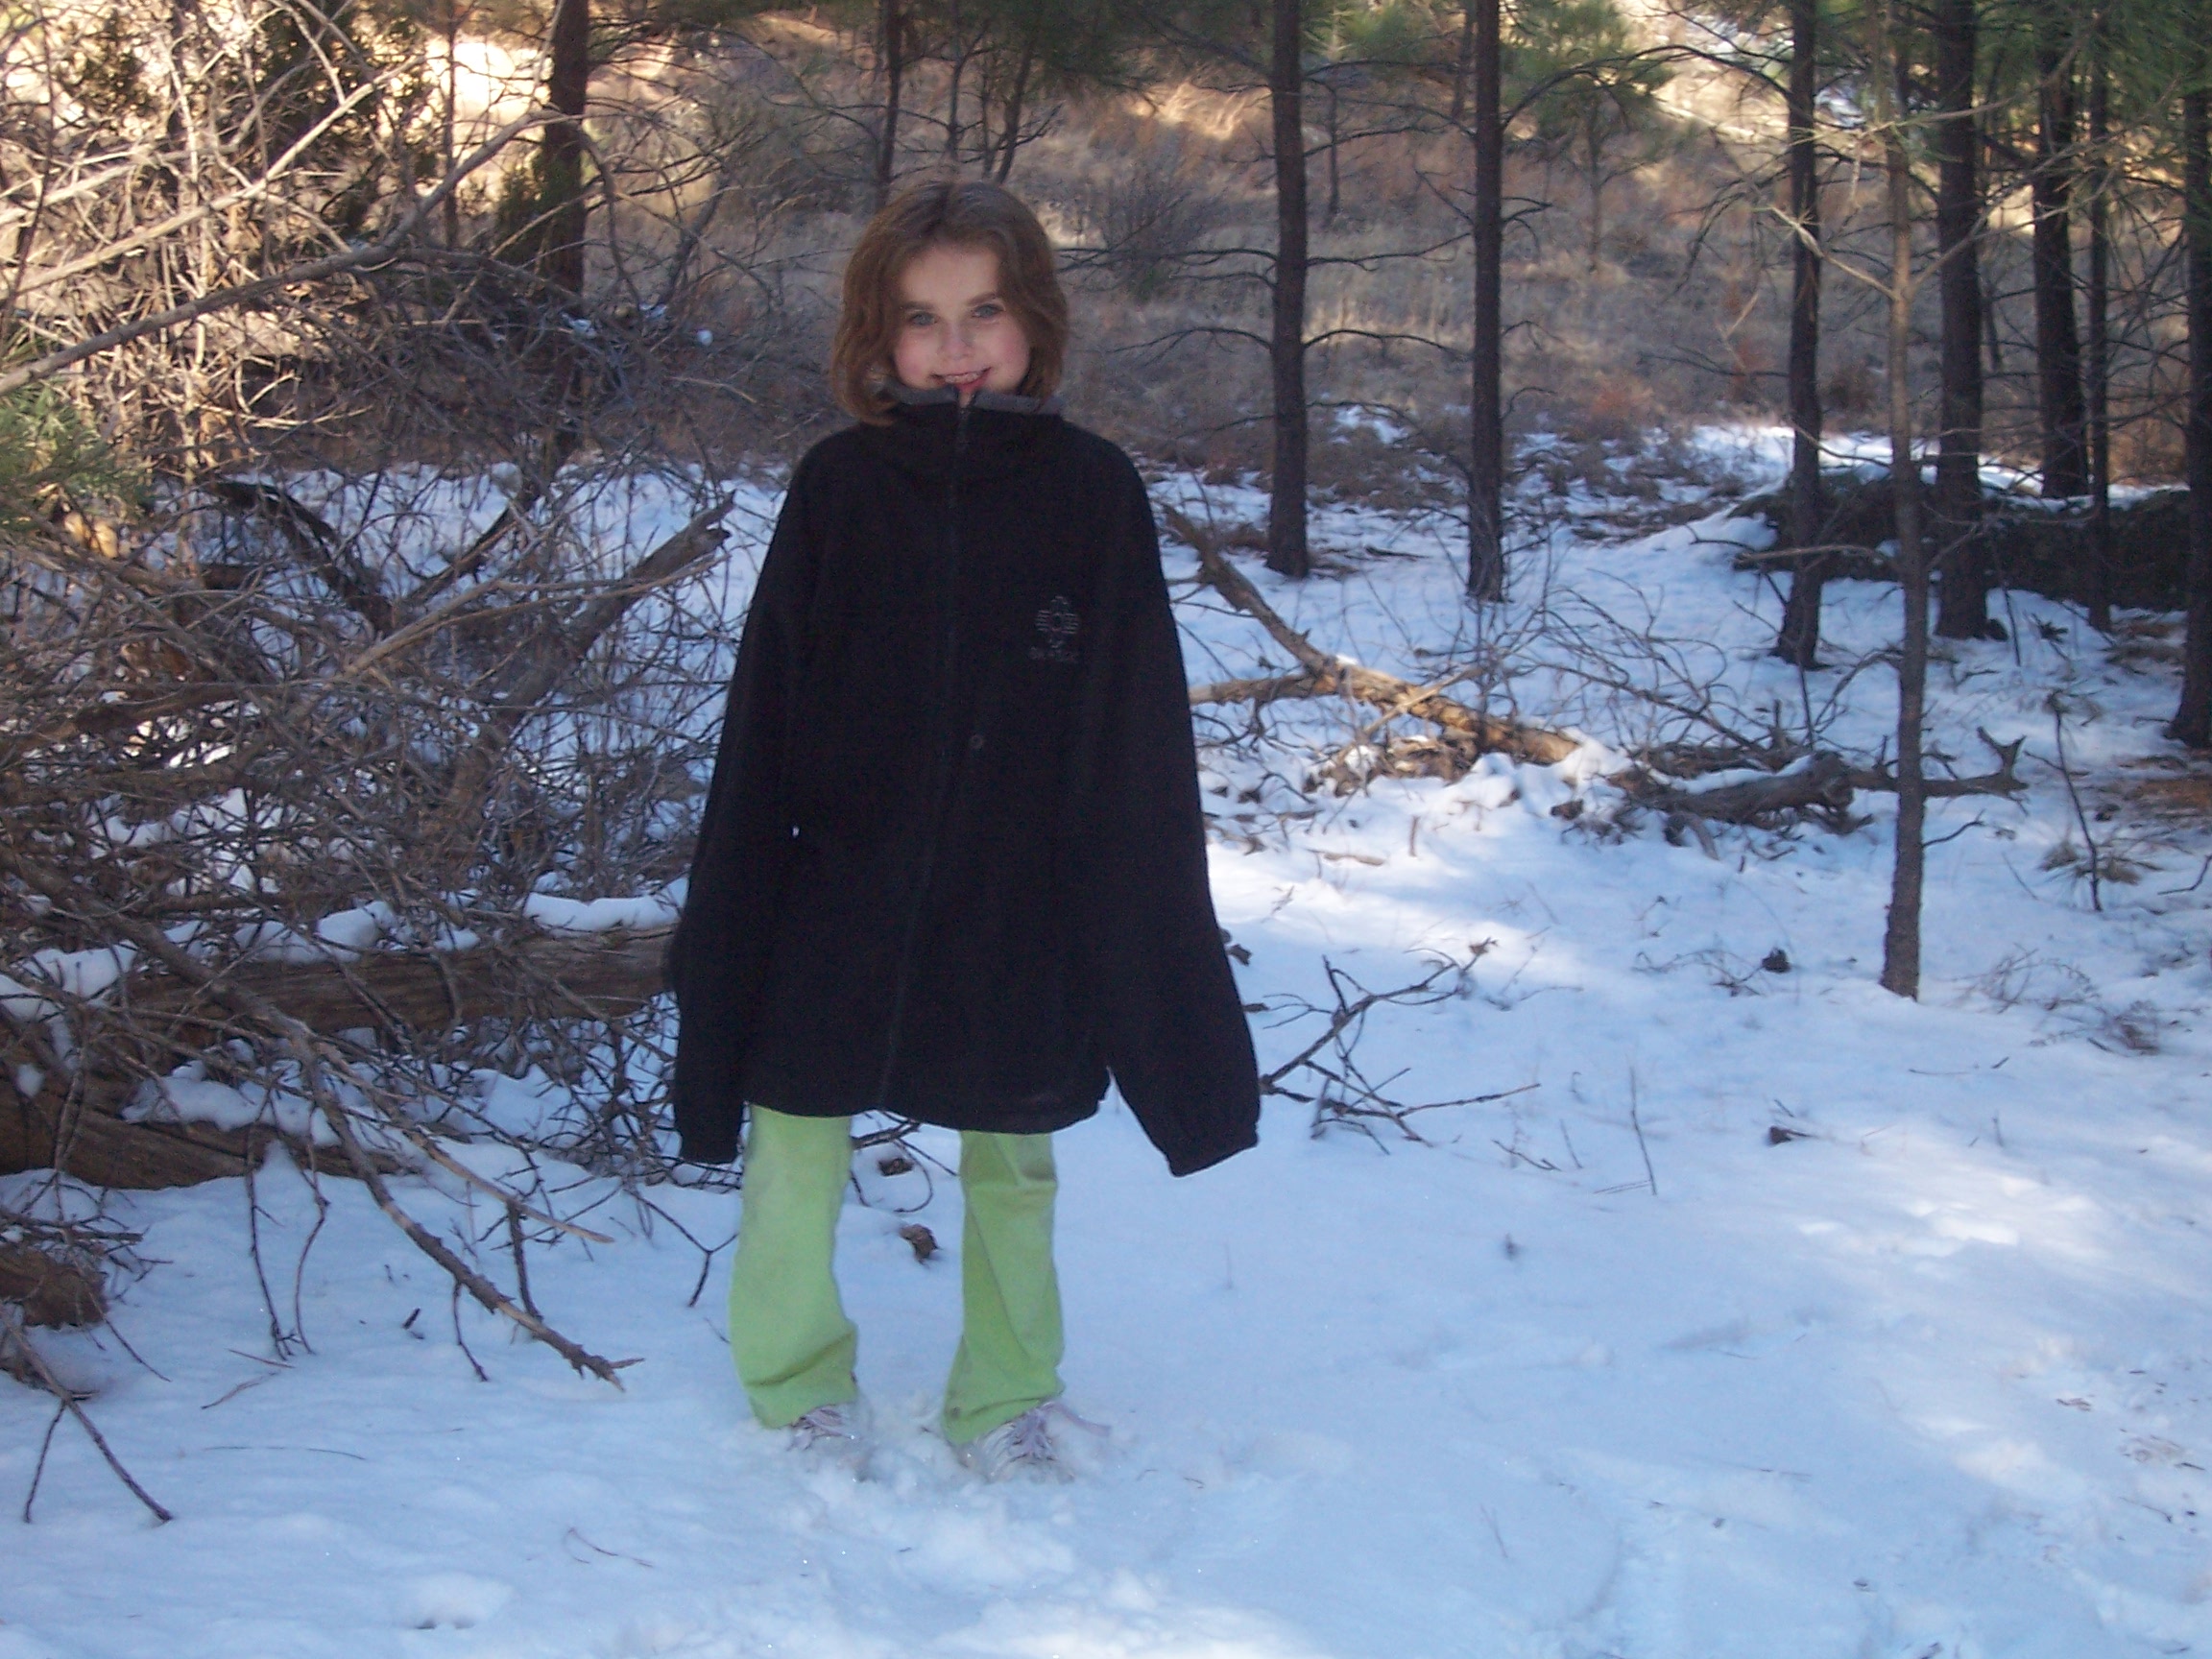 Rachel on the snow